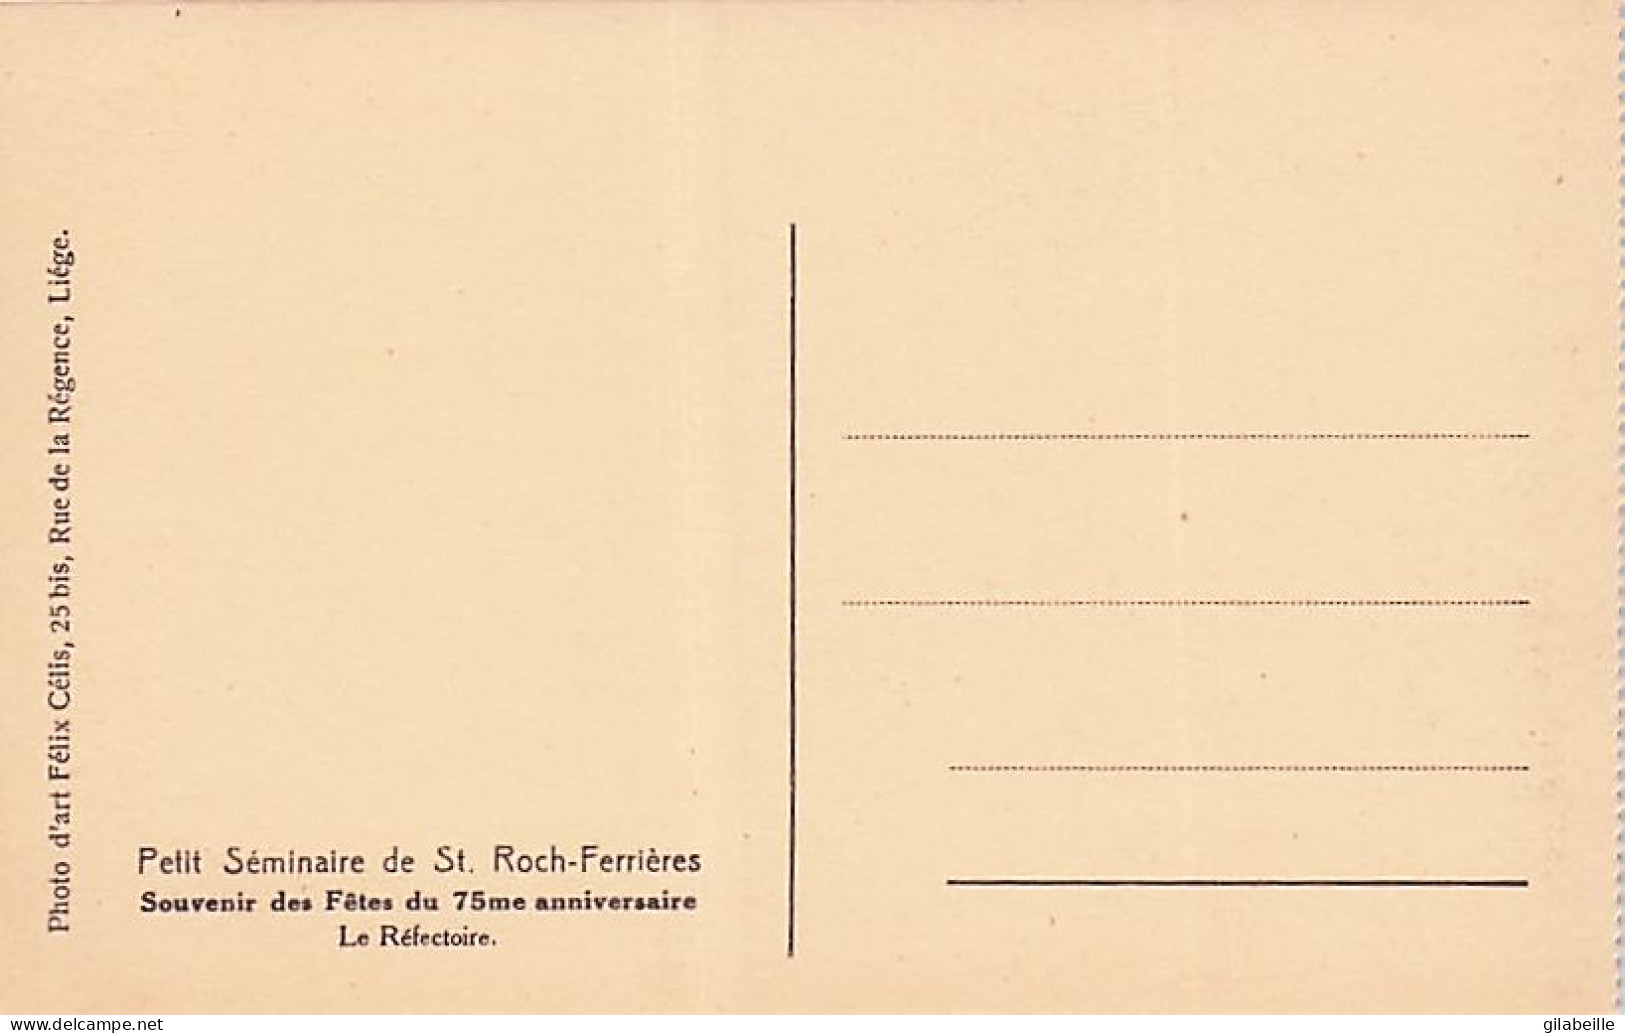 FERRIERES  - petit séminaire de Saint Roch- Ferrieres - lot 21 cartes  - souvenir fetes du 75 eme anniversaire